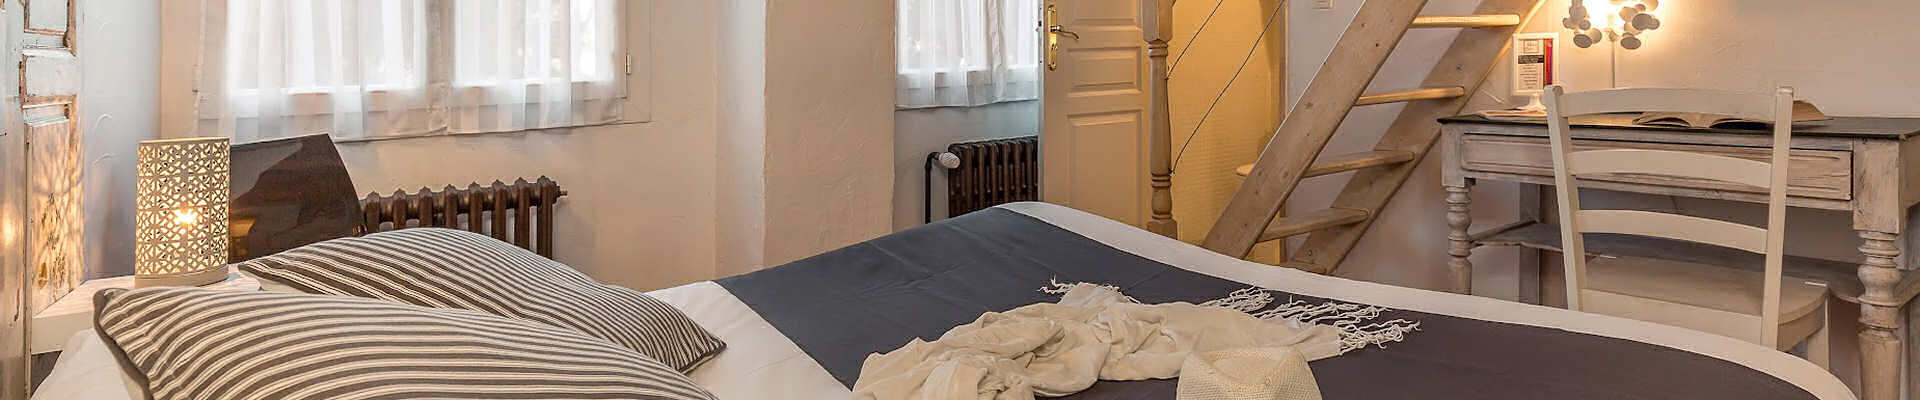 Où dormir à Martigues - Hôtel, Chambre d'hôtes et Camping